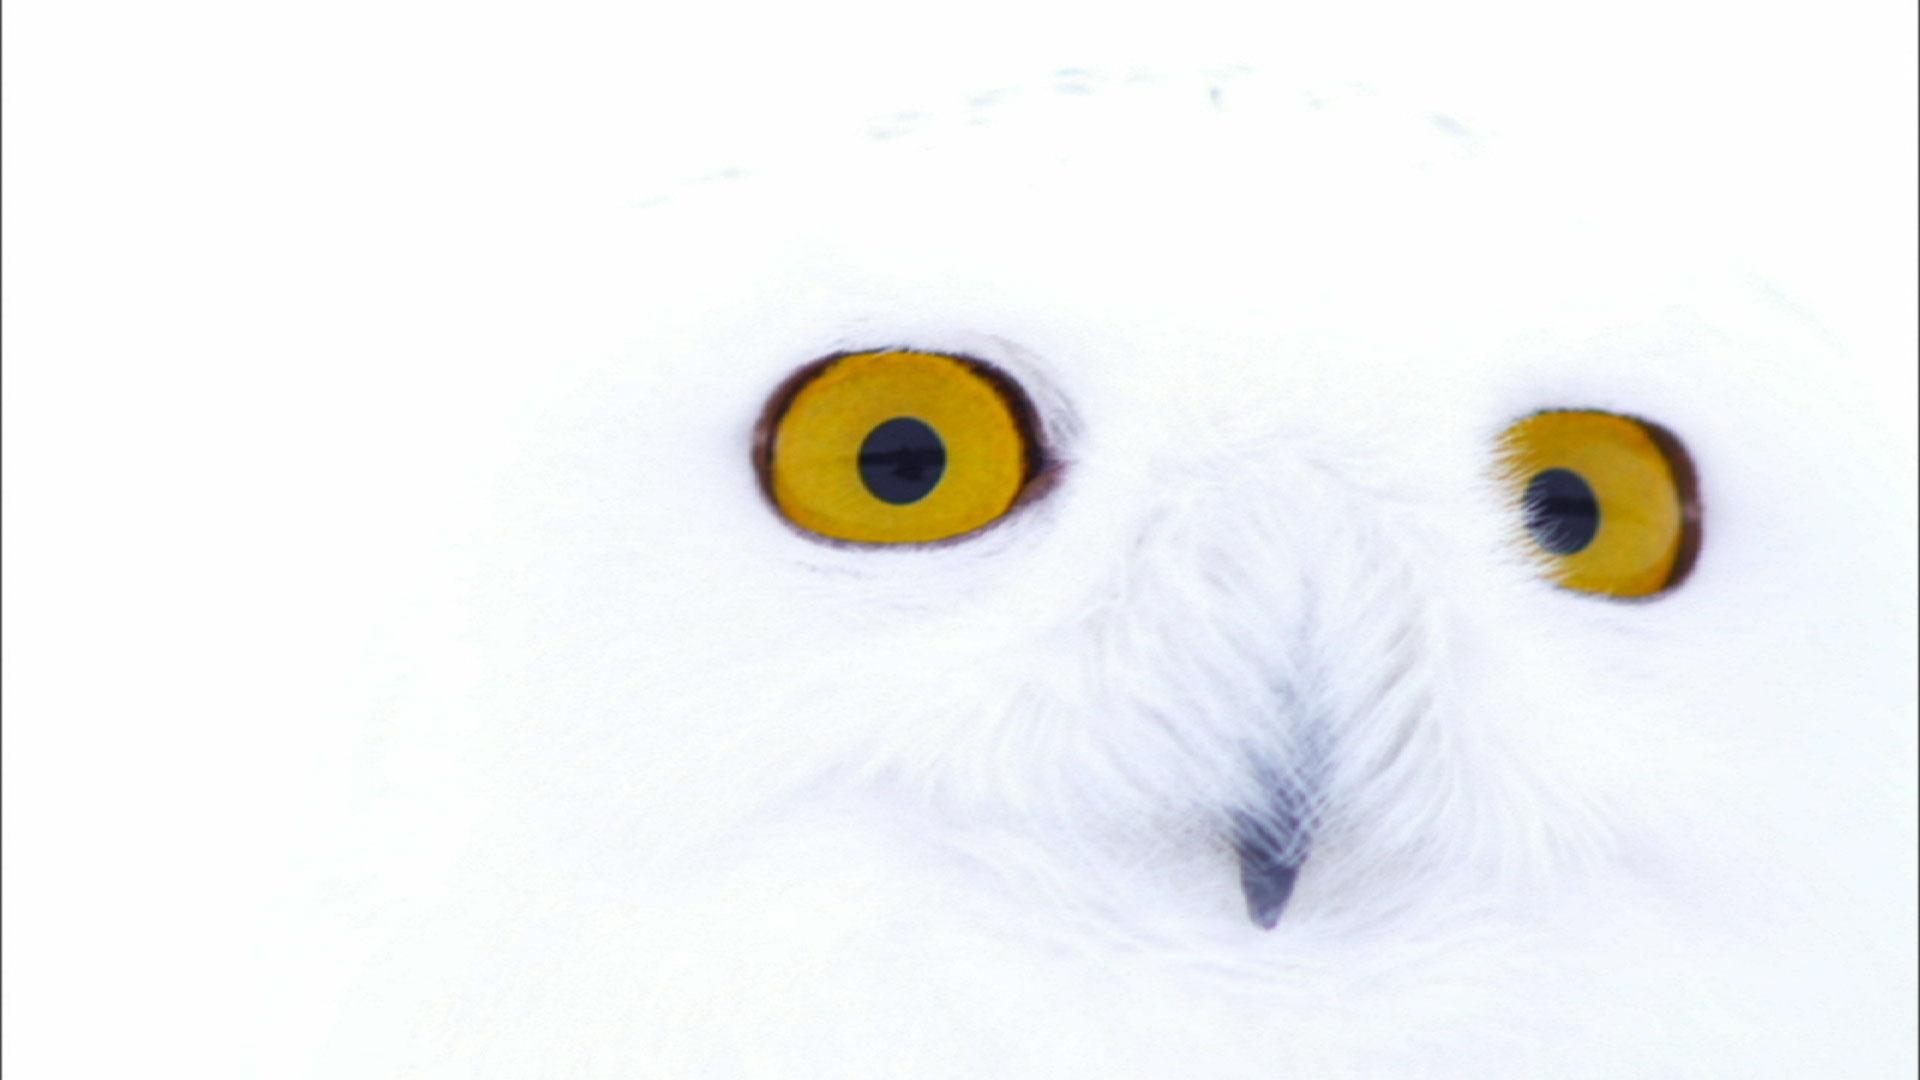 cute real snowy owls